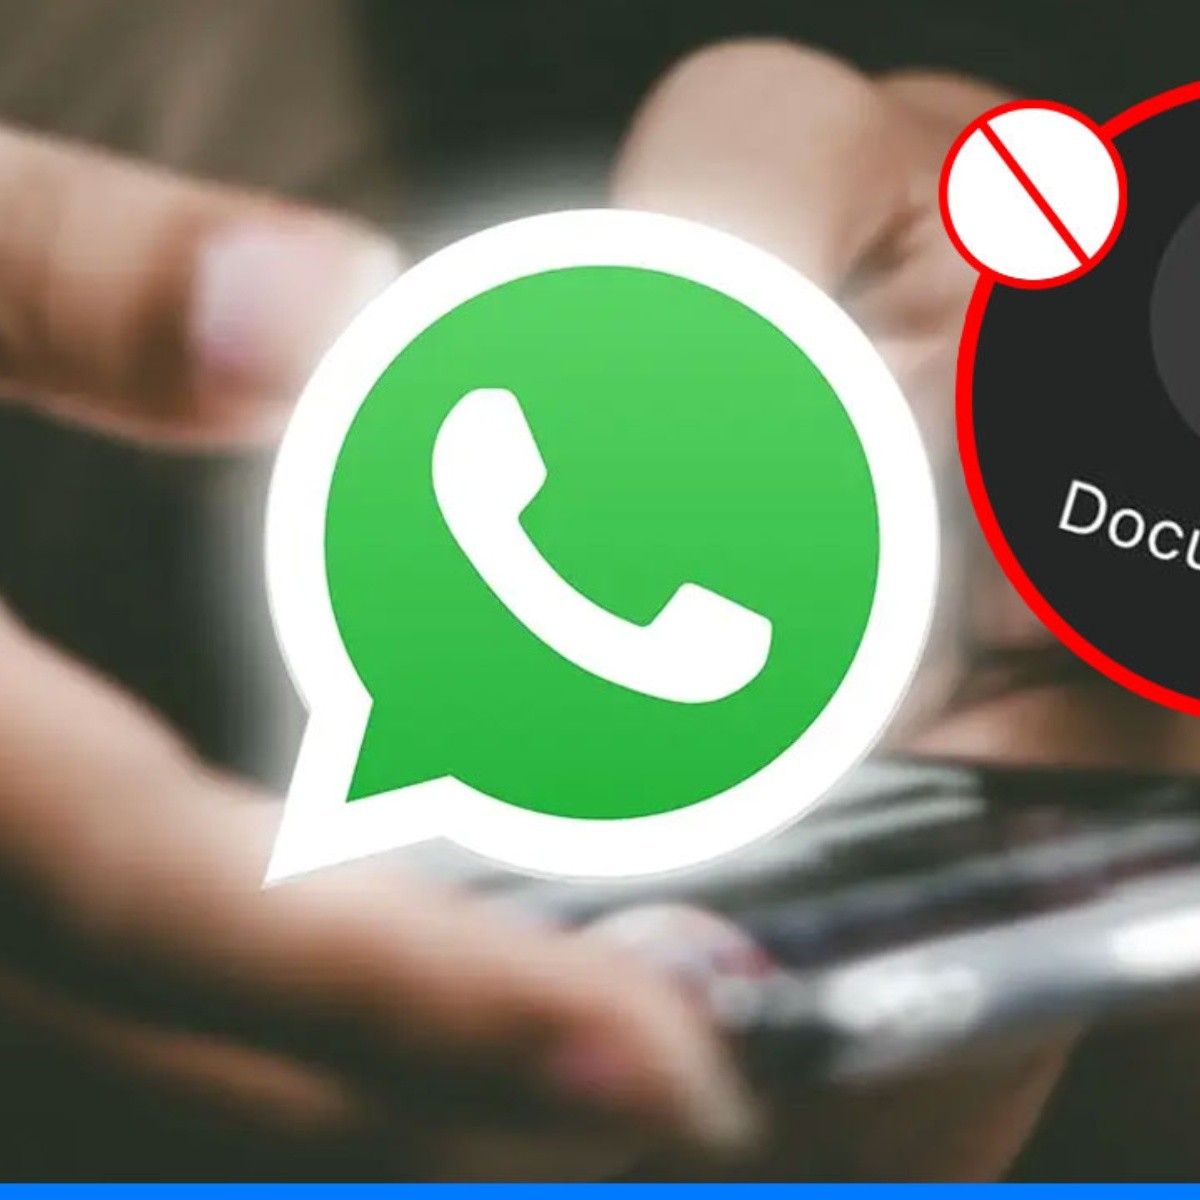 ¡cuidado! enviar fotos como documentos en whatsapp pone en riesgo tu privacidad